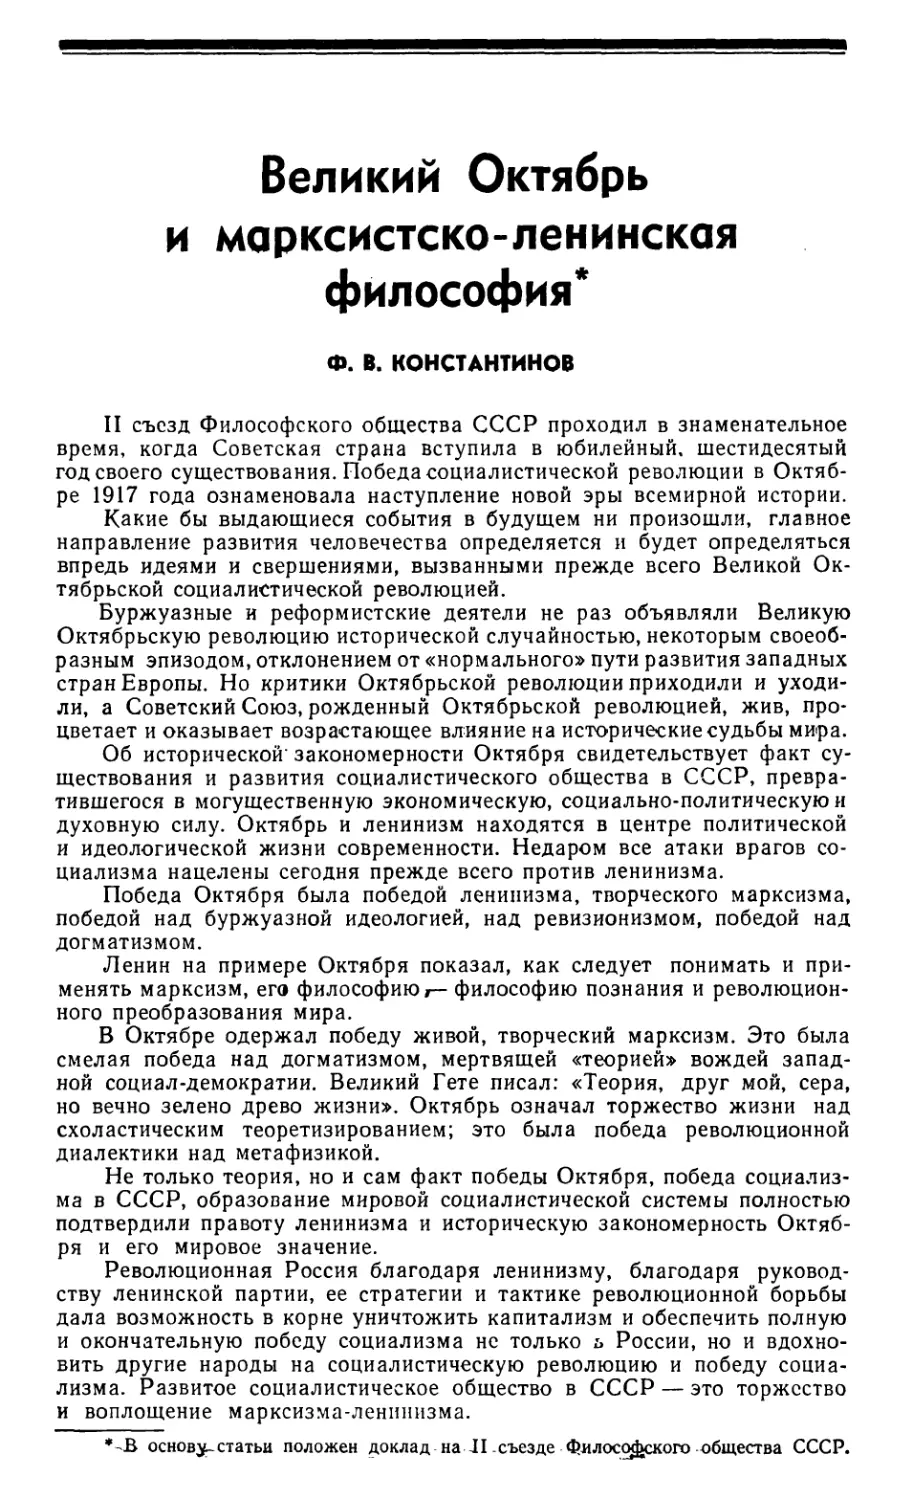 Ф.В. Константинов – Великий Октябрь и марксистско-ленинская философия